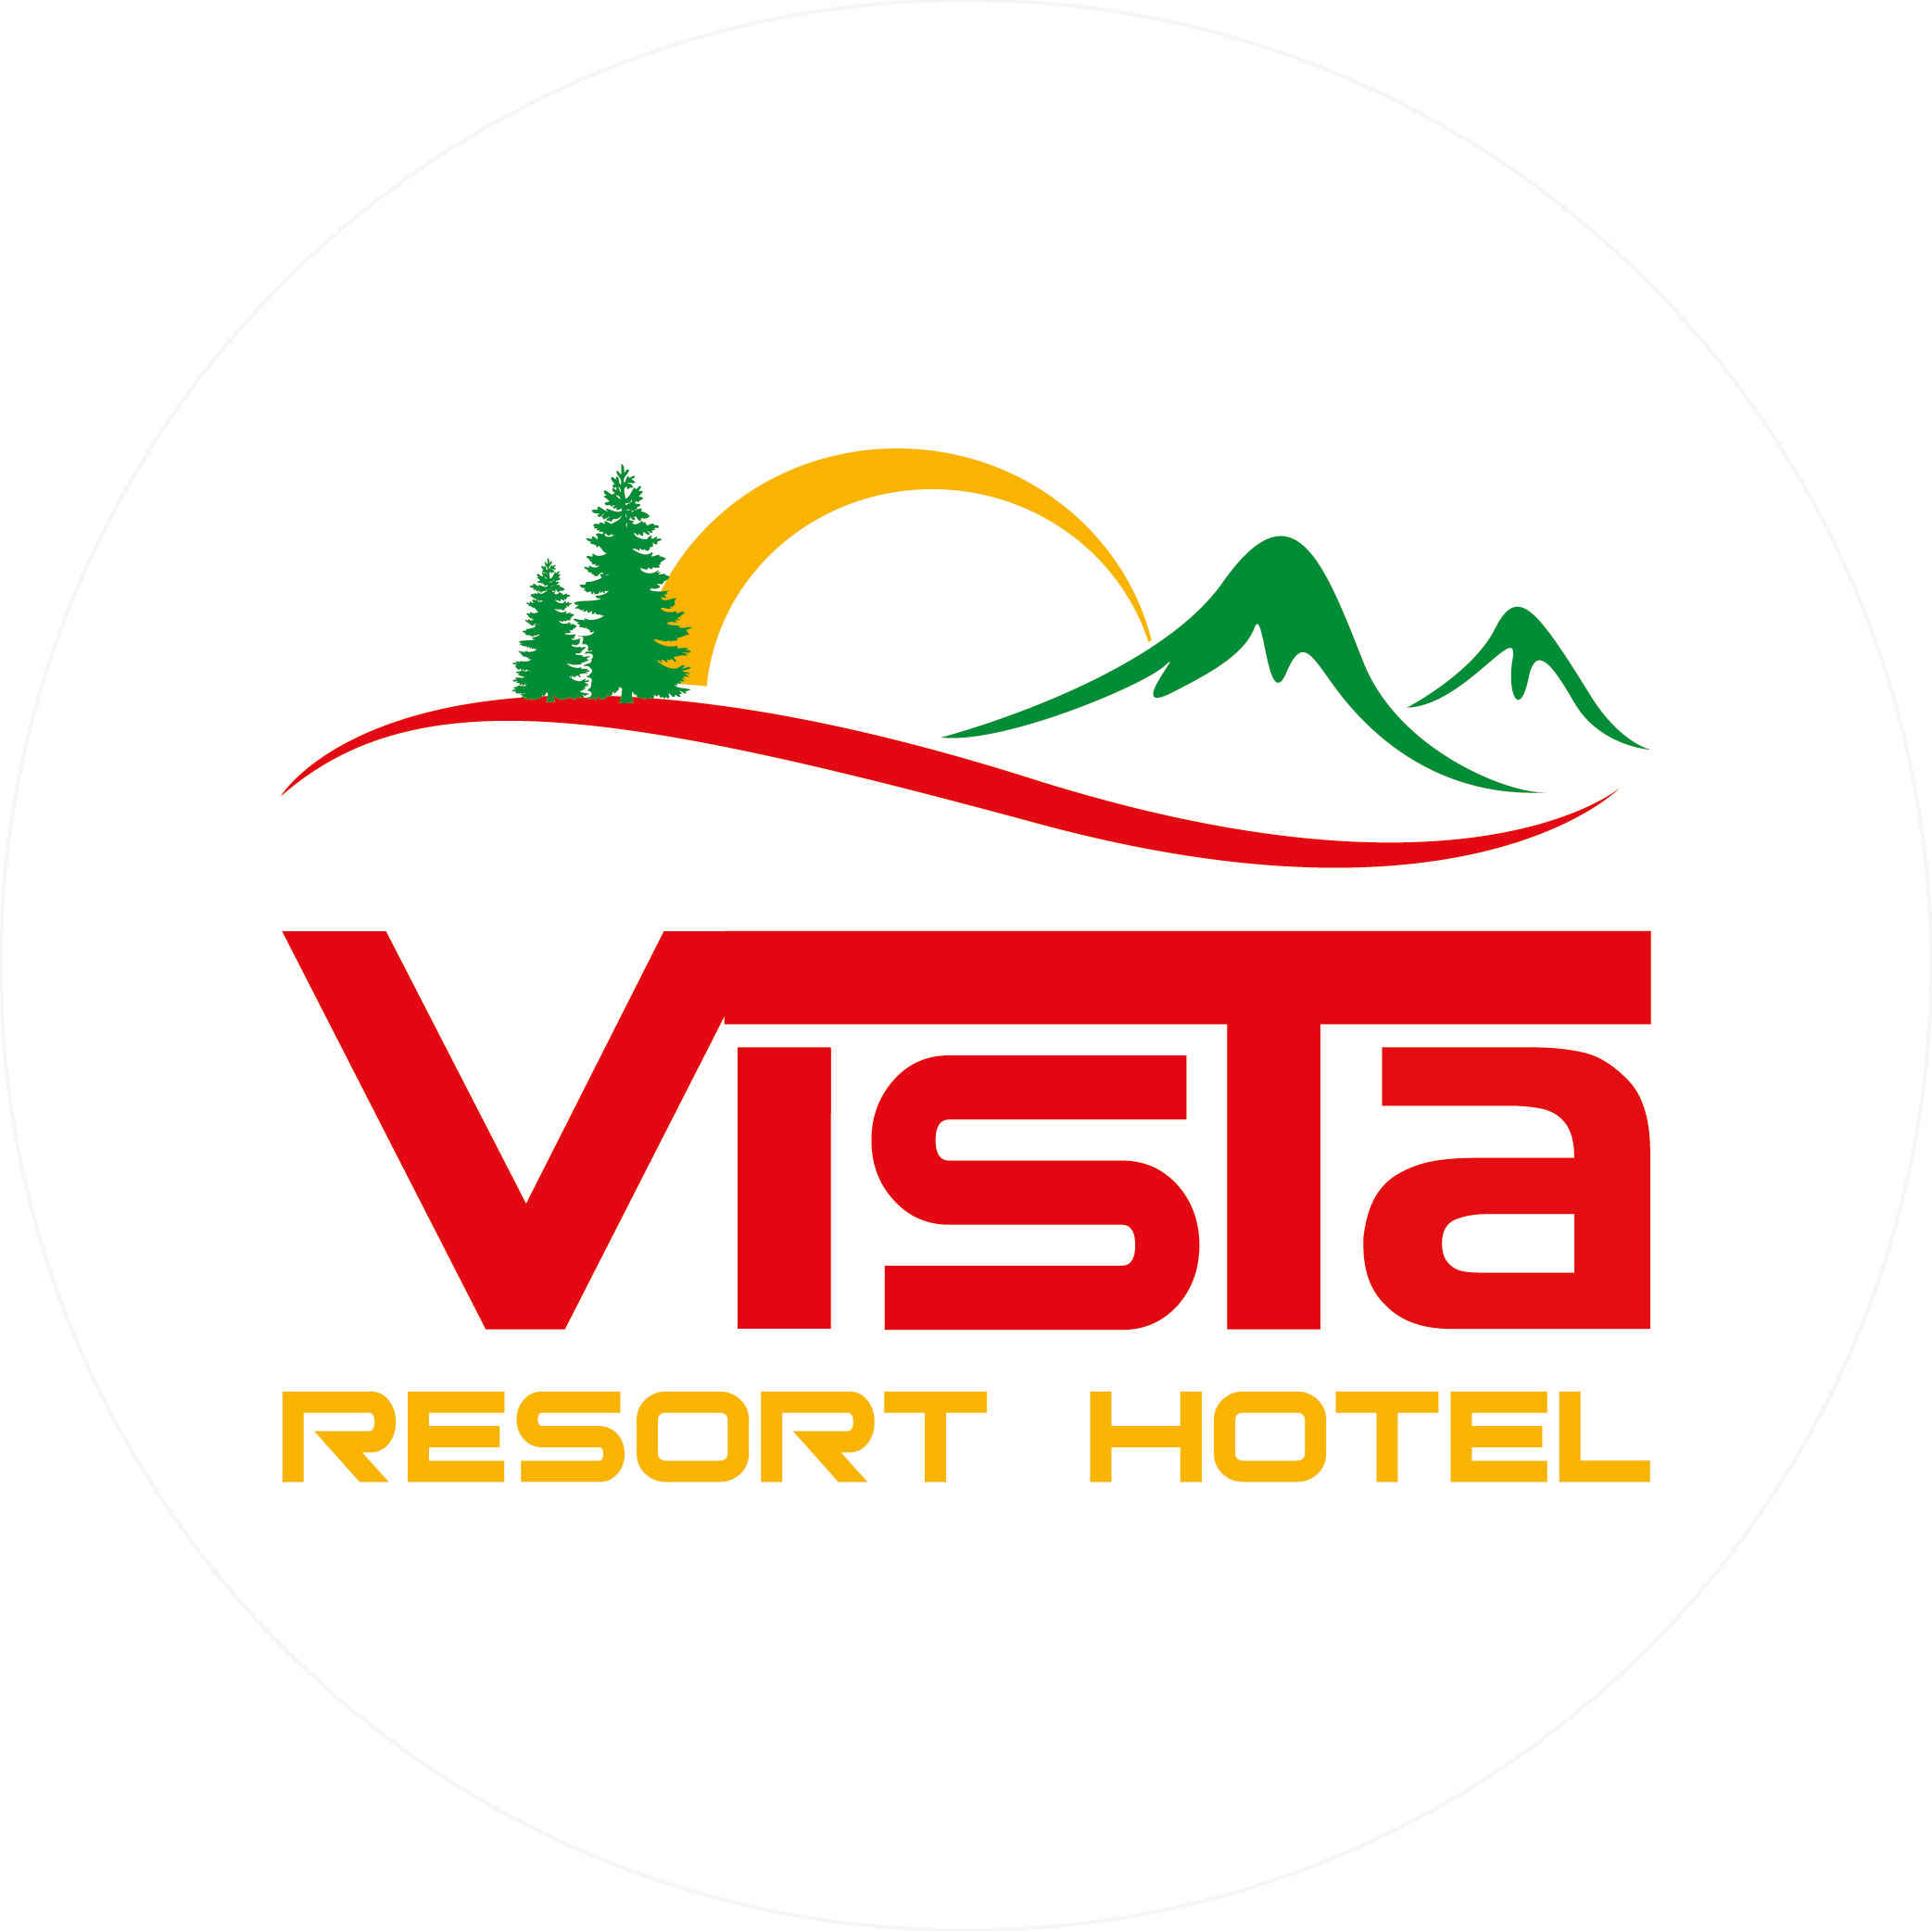 Vista Resort Hotel